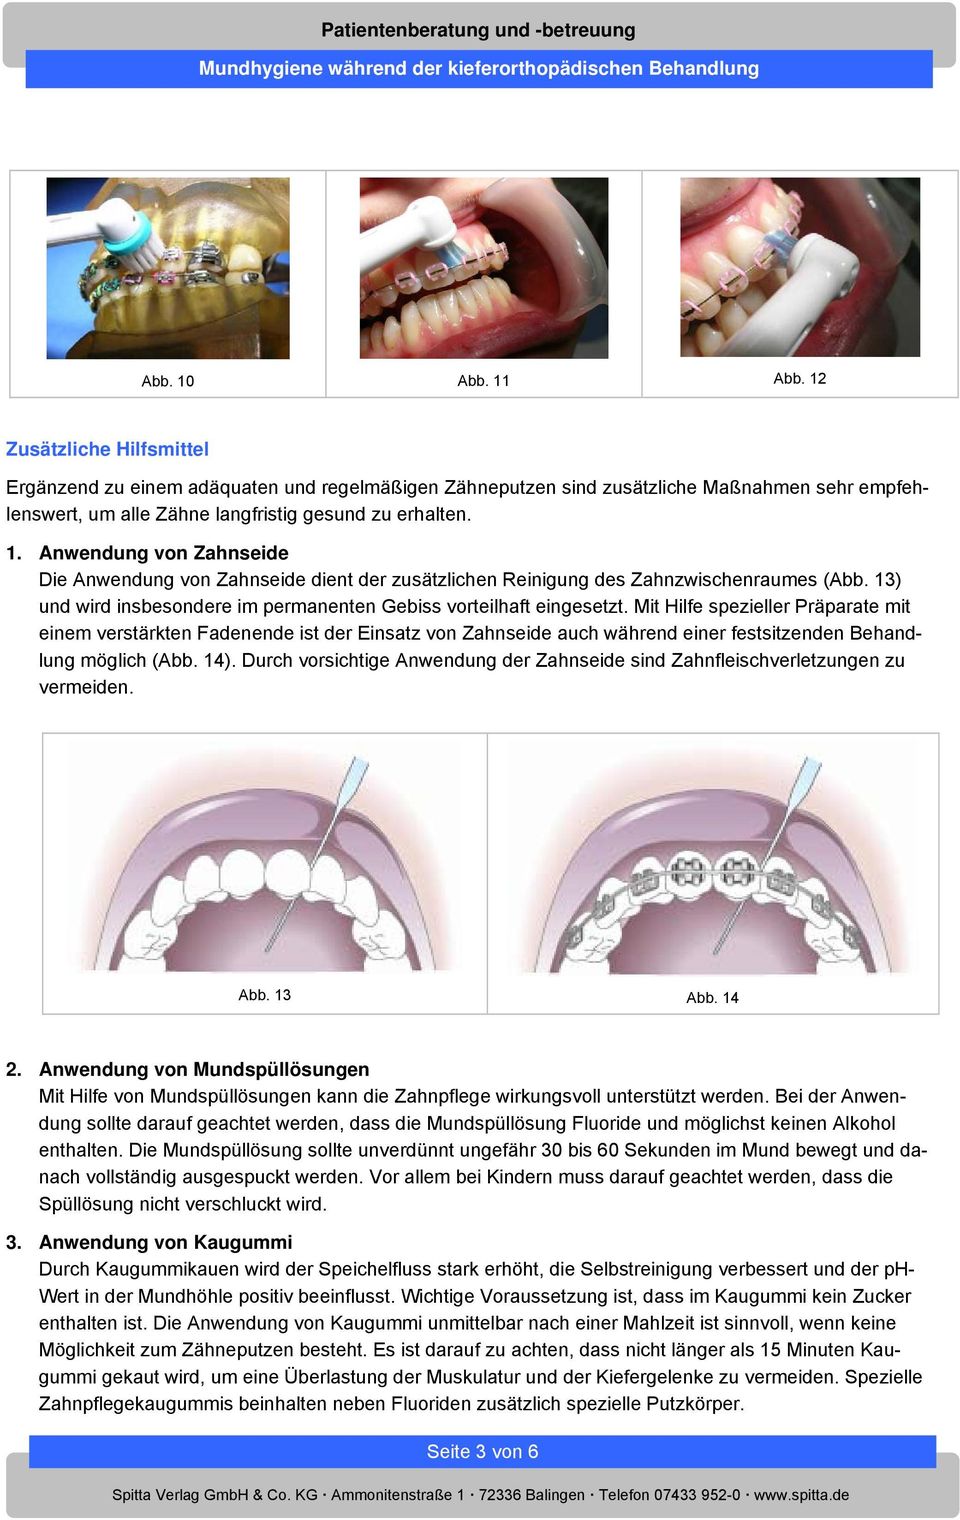 Mit Hilfe spezieller Präparate mit einem verstärkten Fadenende ist der Einsatz von Zahnseide auch während einer festsitzenden Behandlung möglich (Abb. 14).